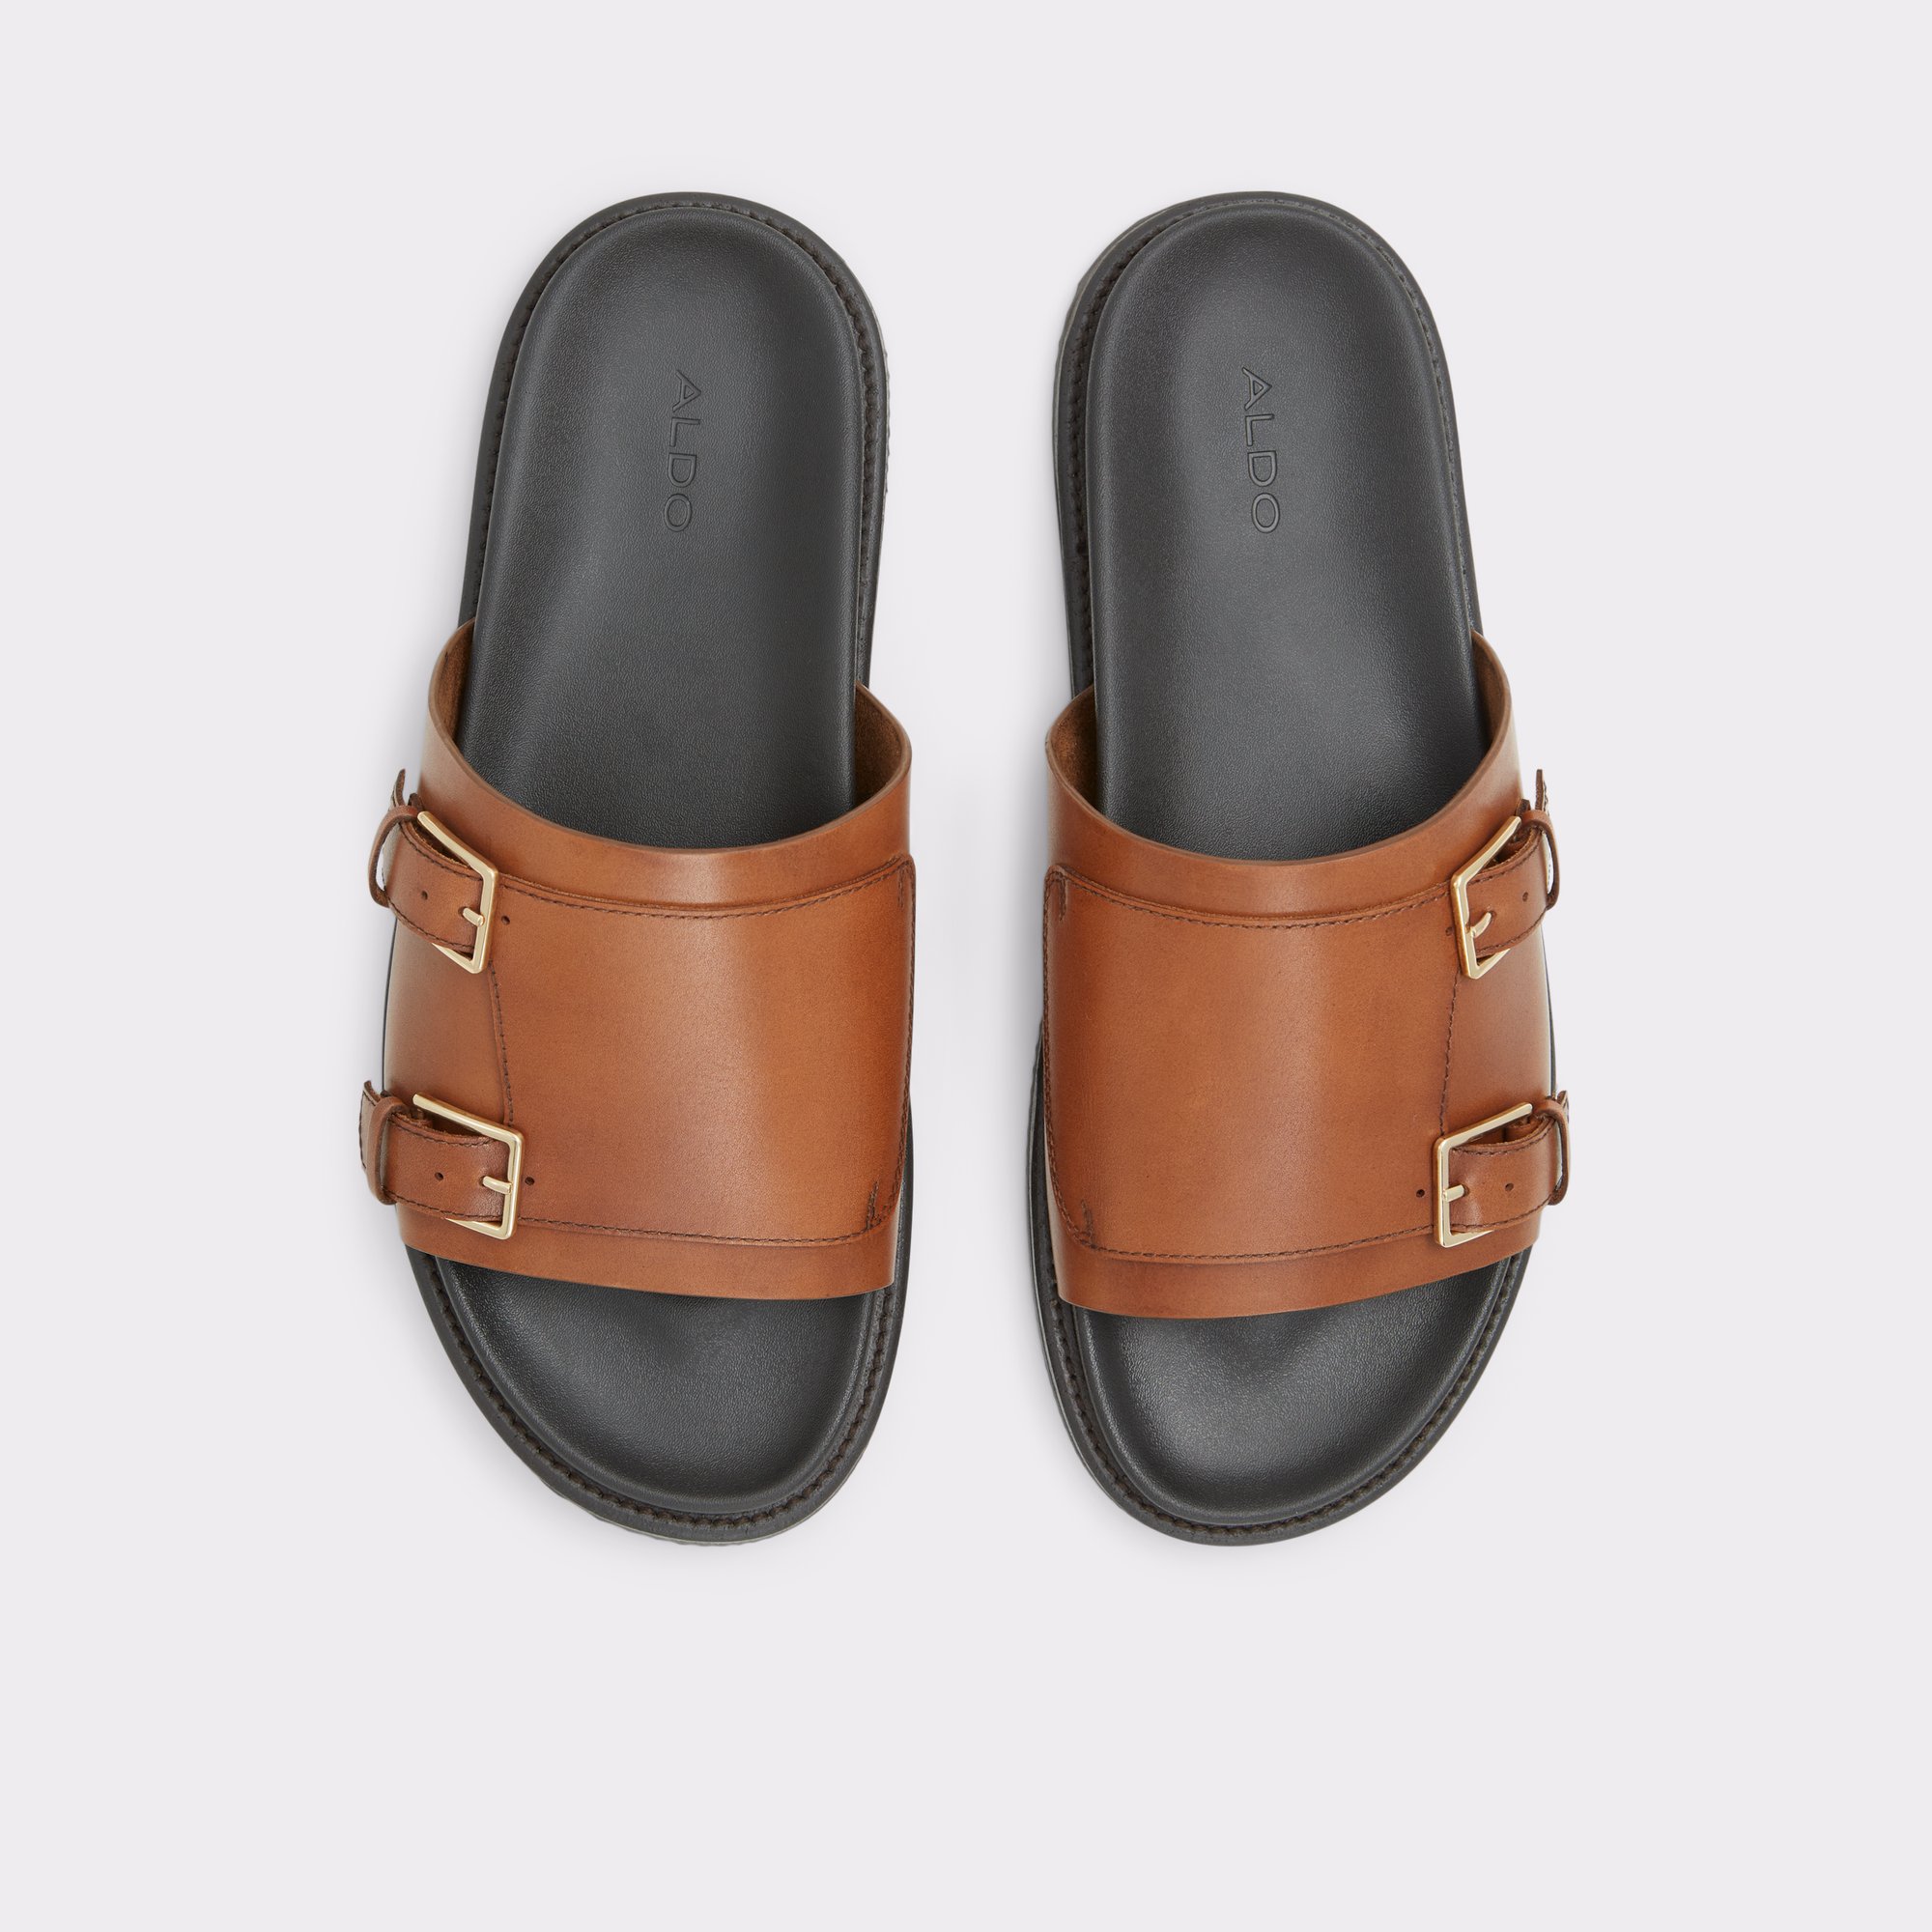 Men's Sandals | ALDOShoes.com | Mens snow boots, Mens sandals, Mens leather  sandals